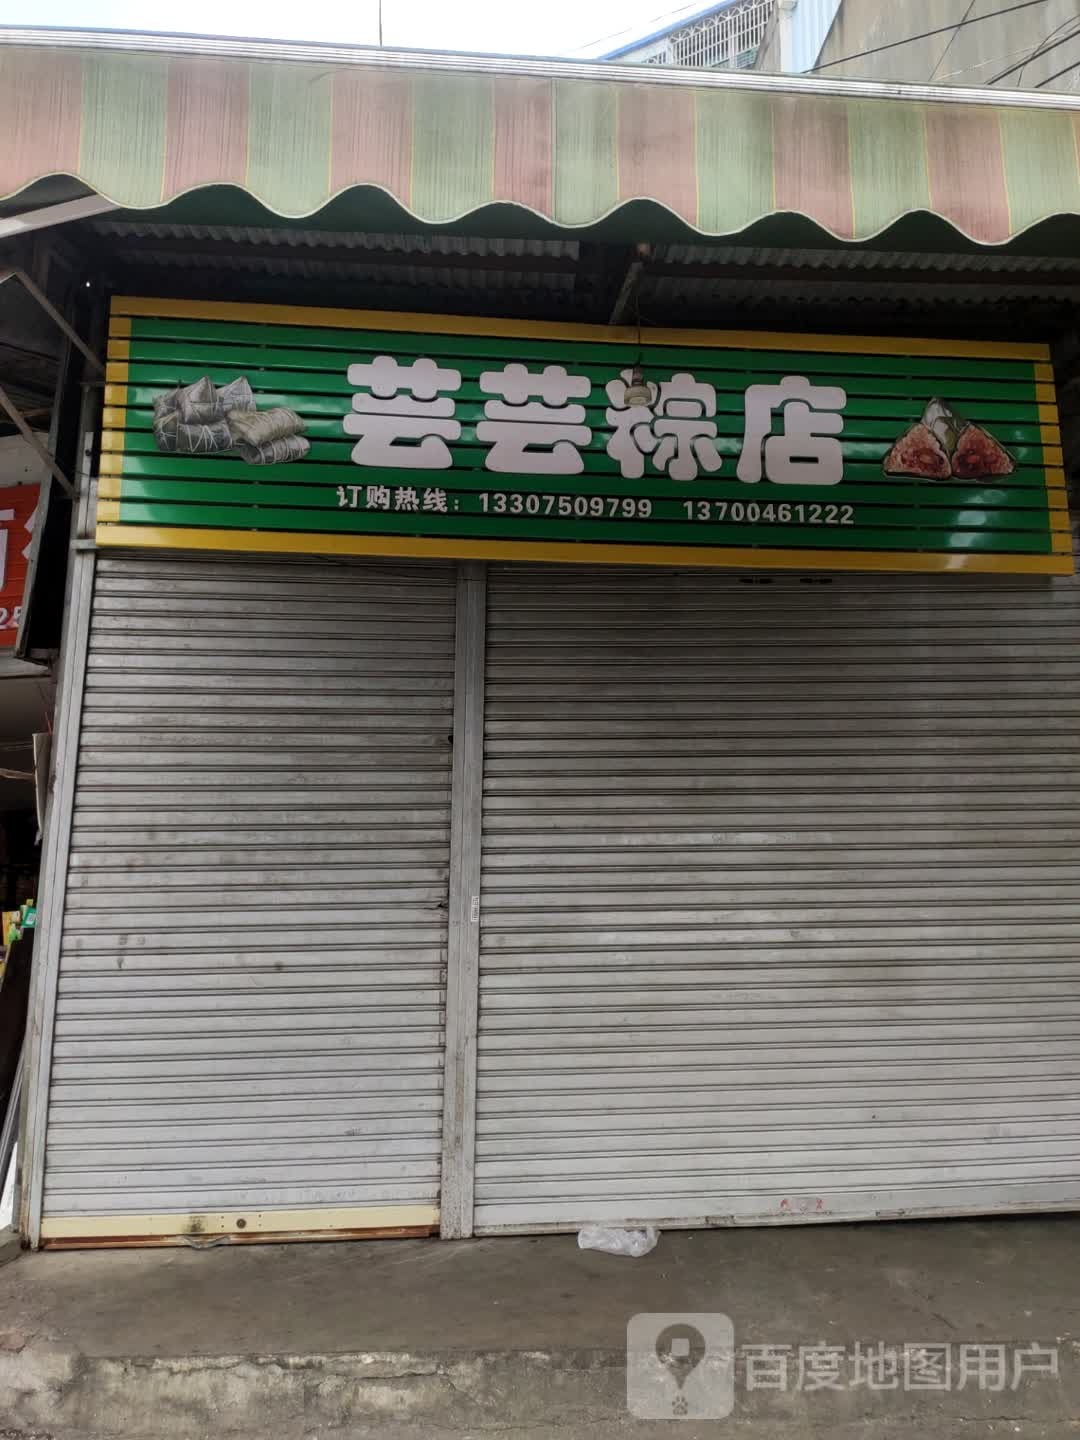 芸芸粽店